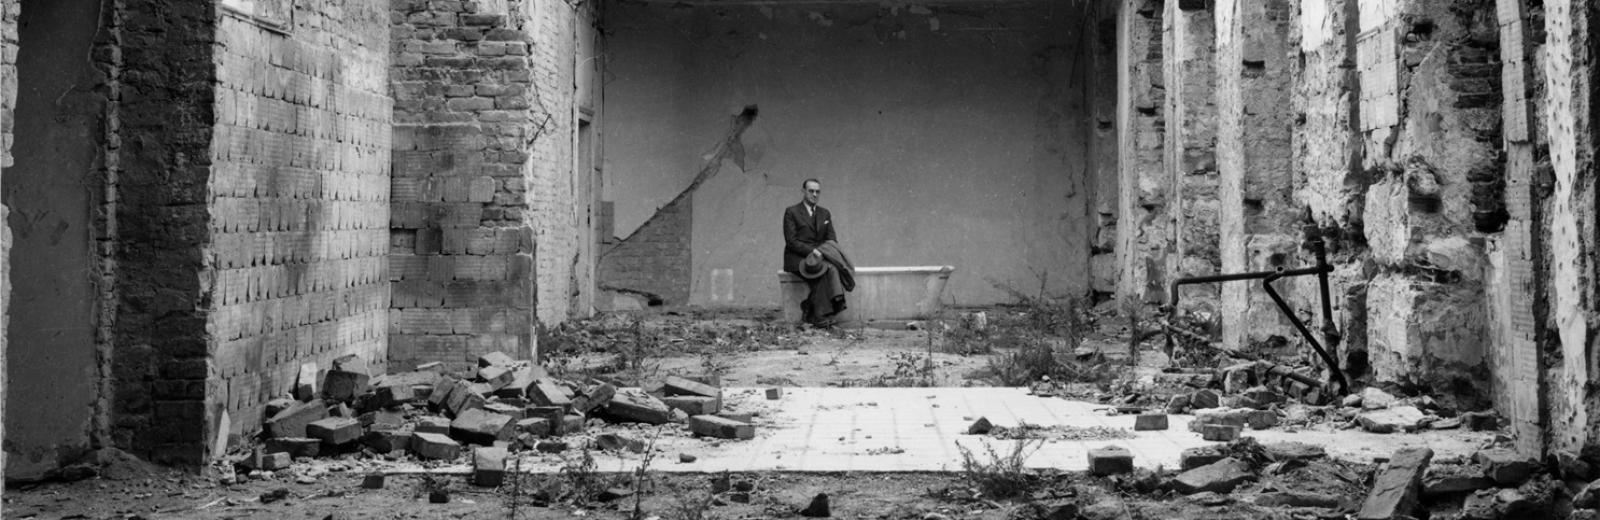 Carl Lutz im Innenhof der zerstörten britischen Gesandtschaft © Archiv für Zeitgeschichte ETH Zürich / Agnes Hirschi